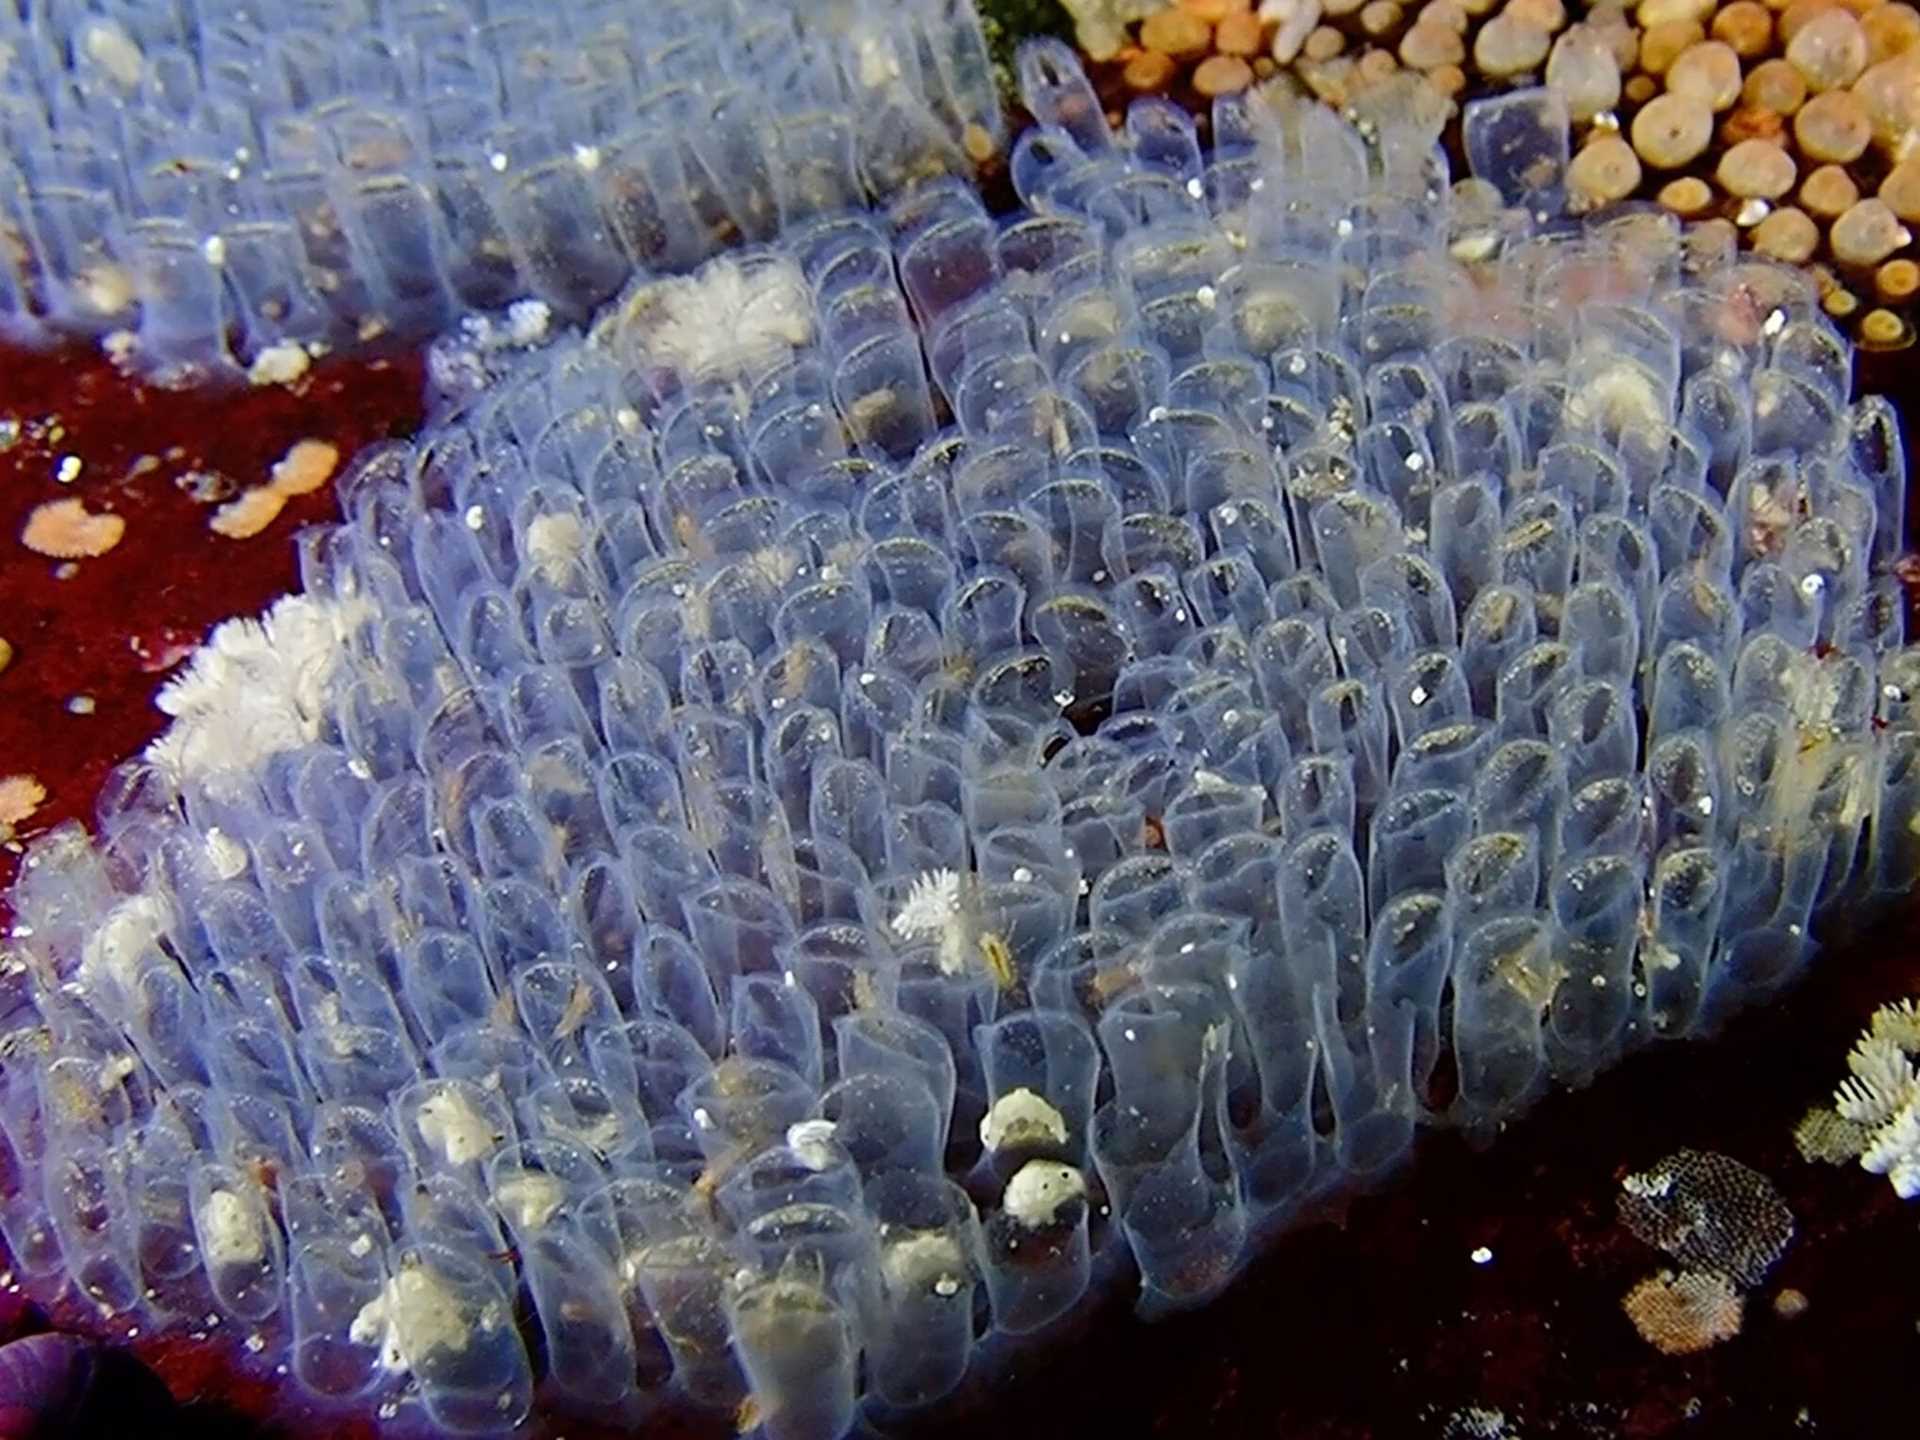 translucent undersea creature with eggs